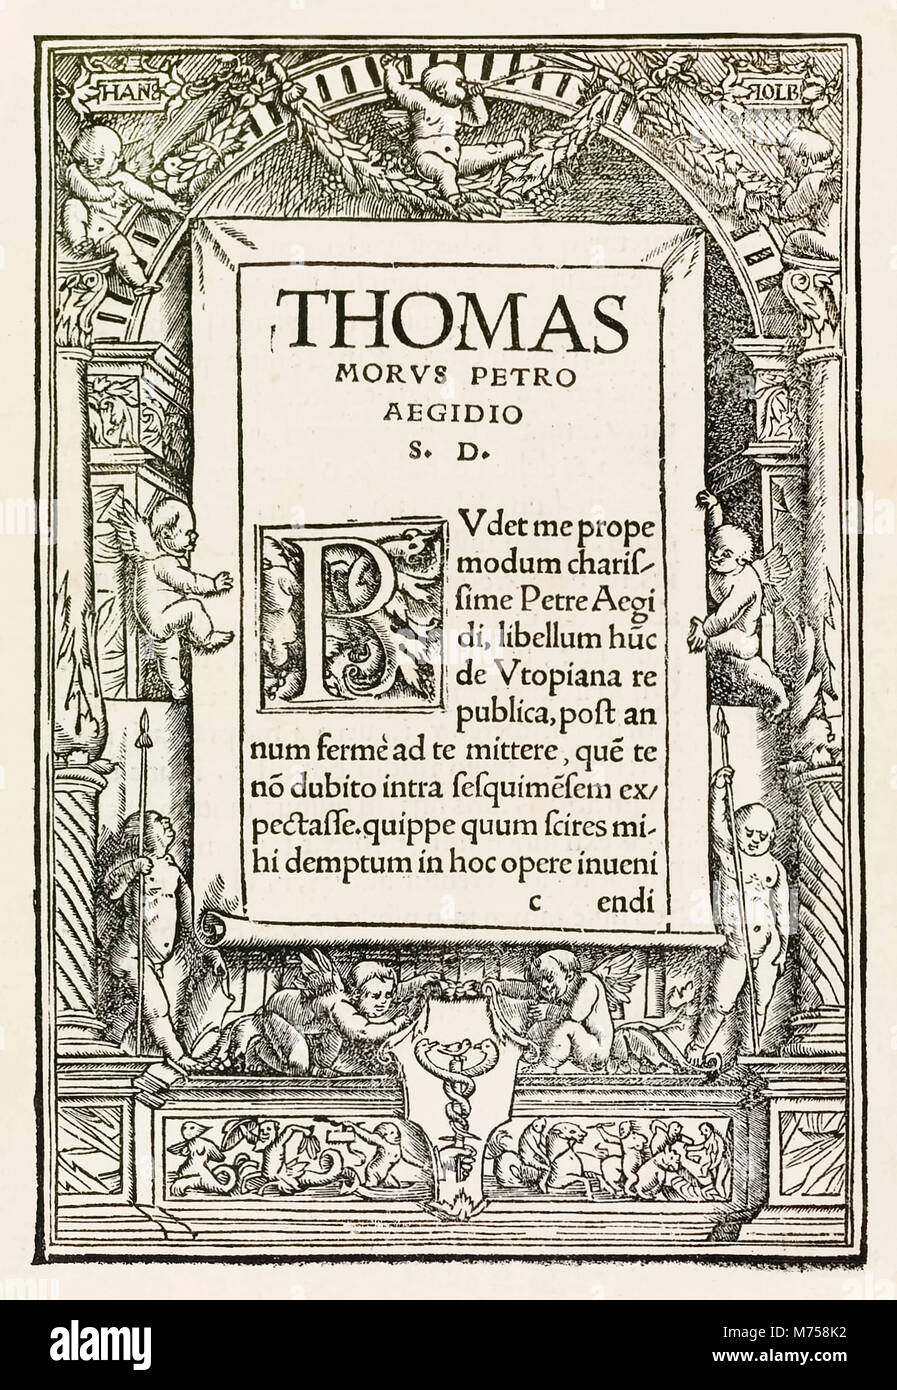 Engagement Seite aus dem Jahre 1518 Basel dritte Ausgabe von "Utopia" von Thomas Morus (1478-1535) erstmals im Jahr 1516 veröffentlicht wurde, widmet die Arbeit zu Pieter Gillis (1486-1533). Holzschnitt von Hans Holbein der Jüngere (c.1497-1543) mit Namen in Kartuschen links oben und rechts, dekorative Boarder von Putti und Drucker Markieren von Johann Frobens (c.1460-1527) zeigt zwei Hände, die der Caduceus unten in der Mitte. Weitere Informationen finden Sie unten. Stockfoto